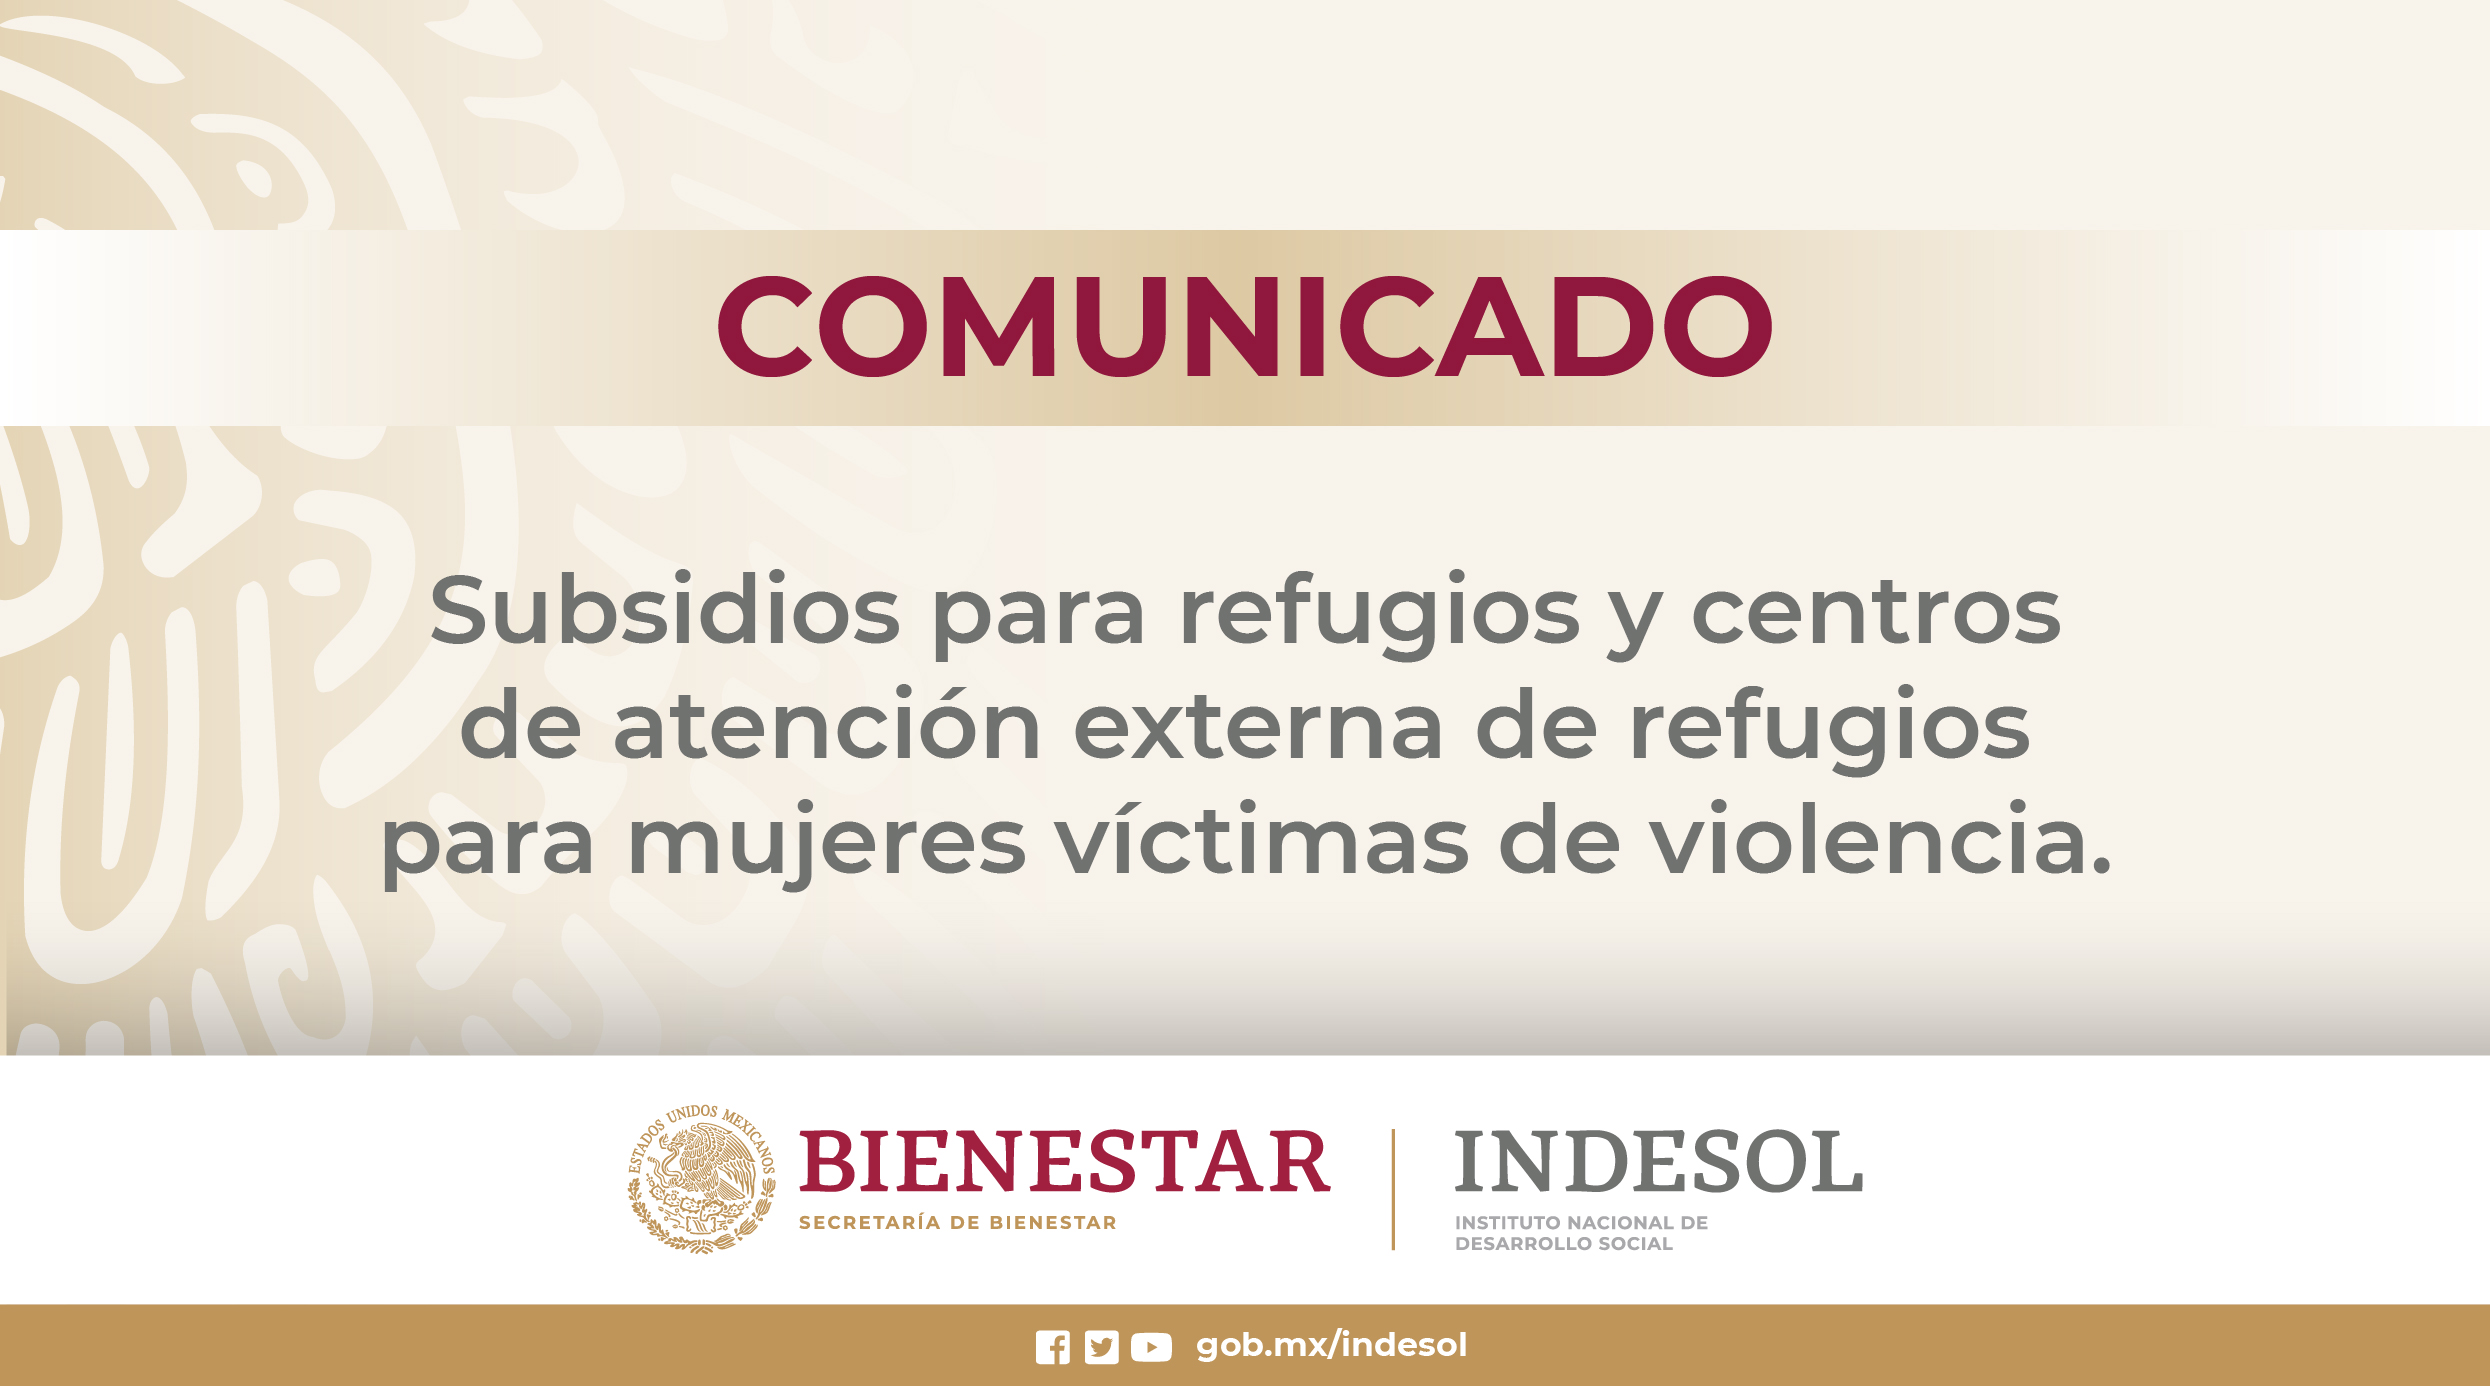 COMUNICADO: Subsidios para refugios y centros de atención externa de refugios para mujeres víctimas de violencia 